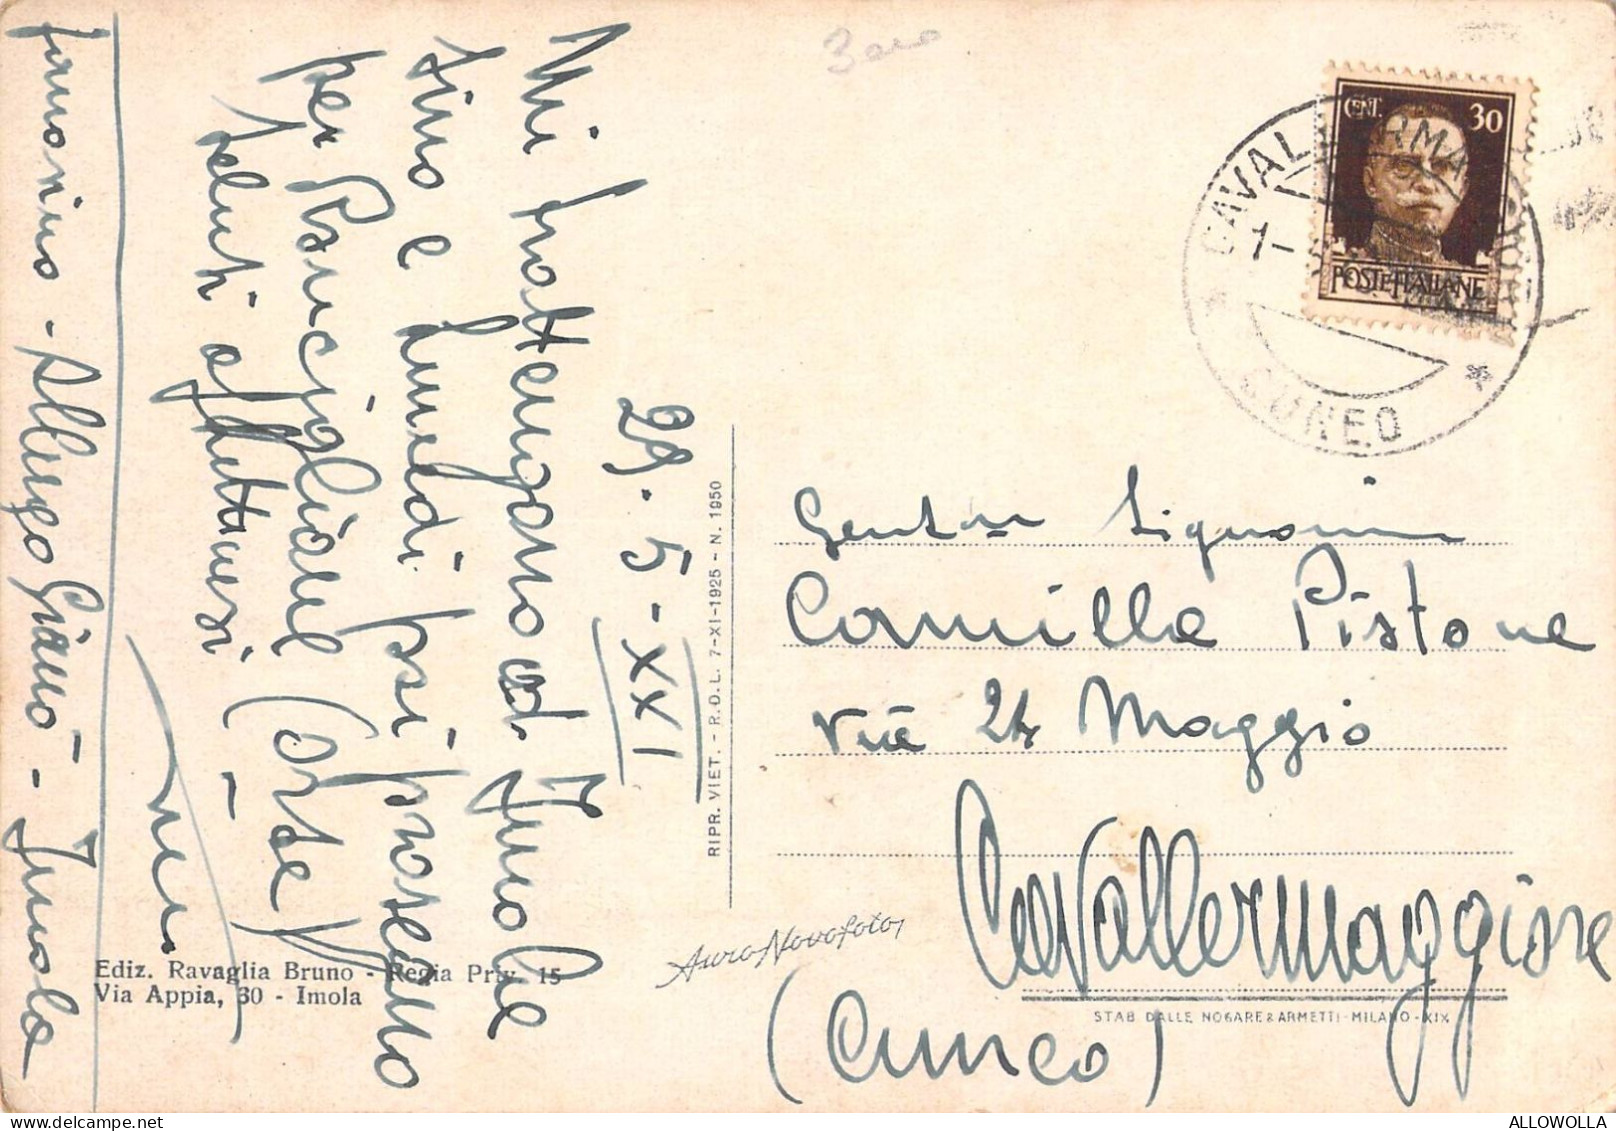 24750 " IMOLA-GALLERIA CENTRO CITTADINO " ANIMATA-VERA FOTO-CART. SPED.1943 - Imola